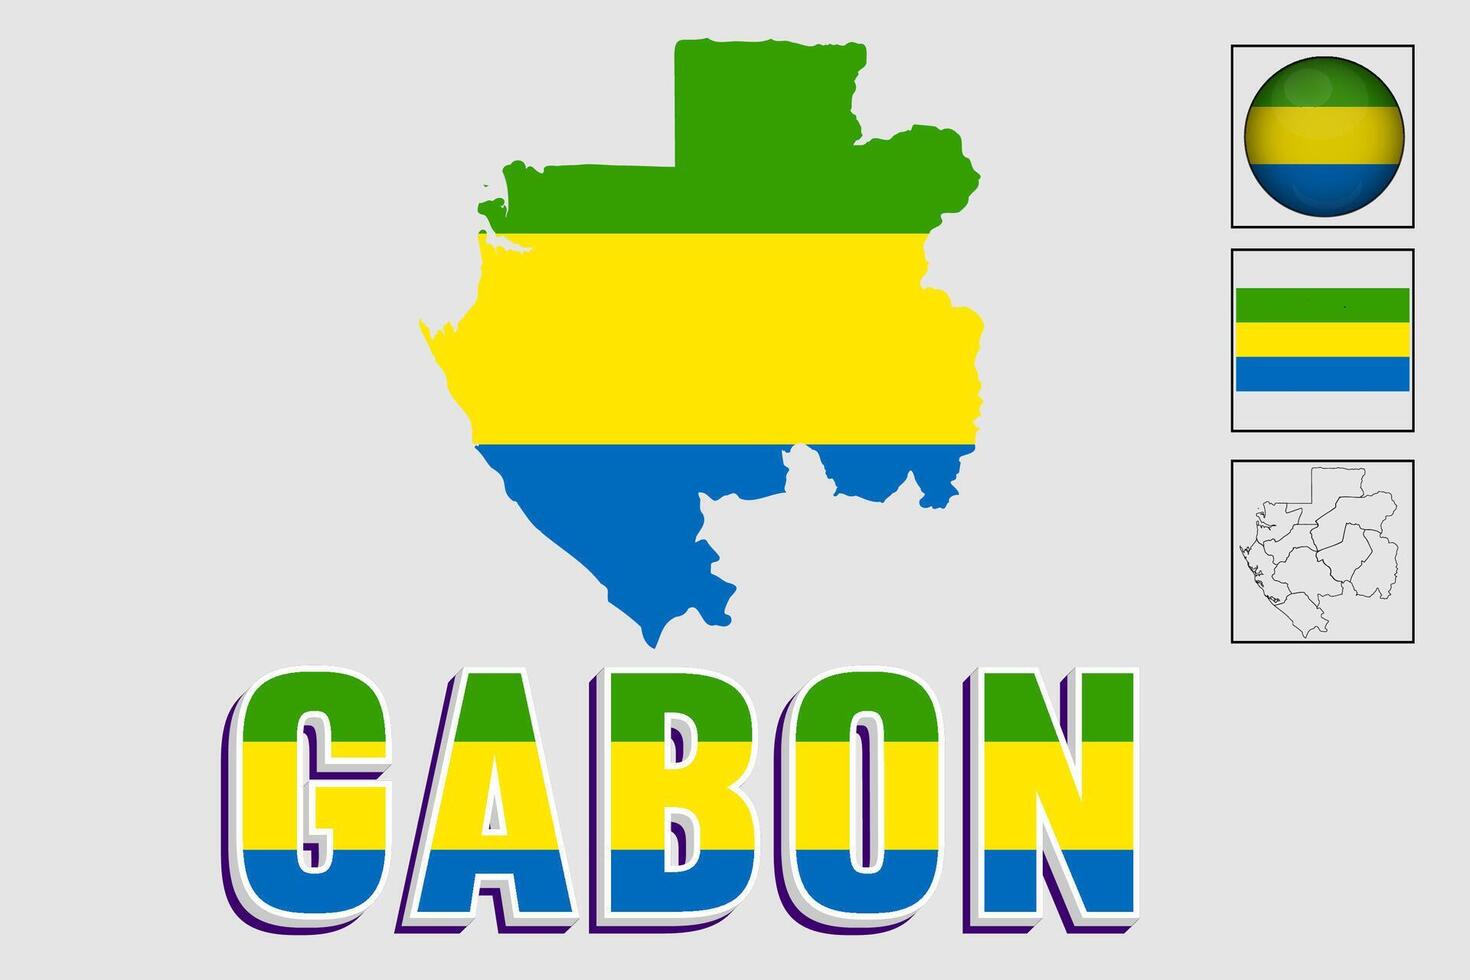 Gabon bandiera nazionale Africa emblema carta geografica icona vettore illustrazione